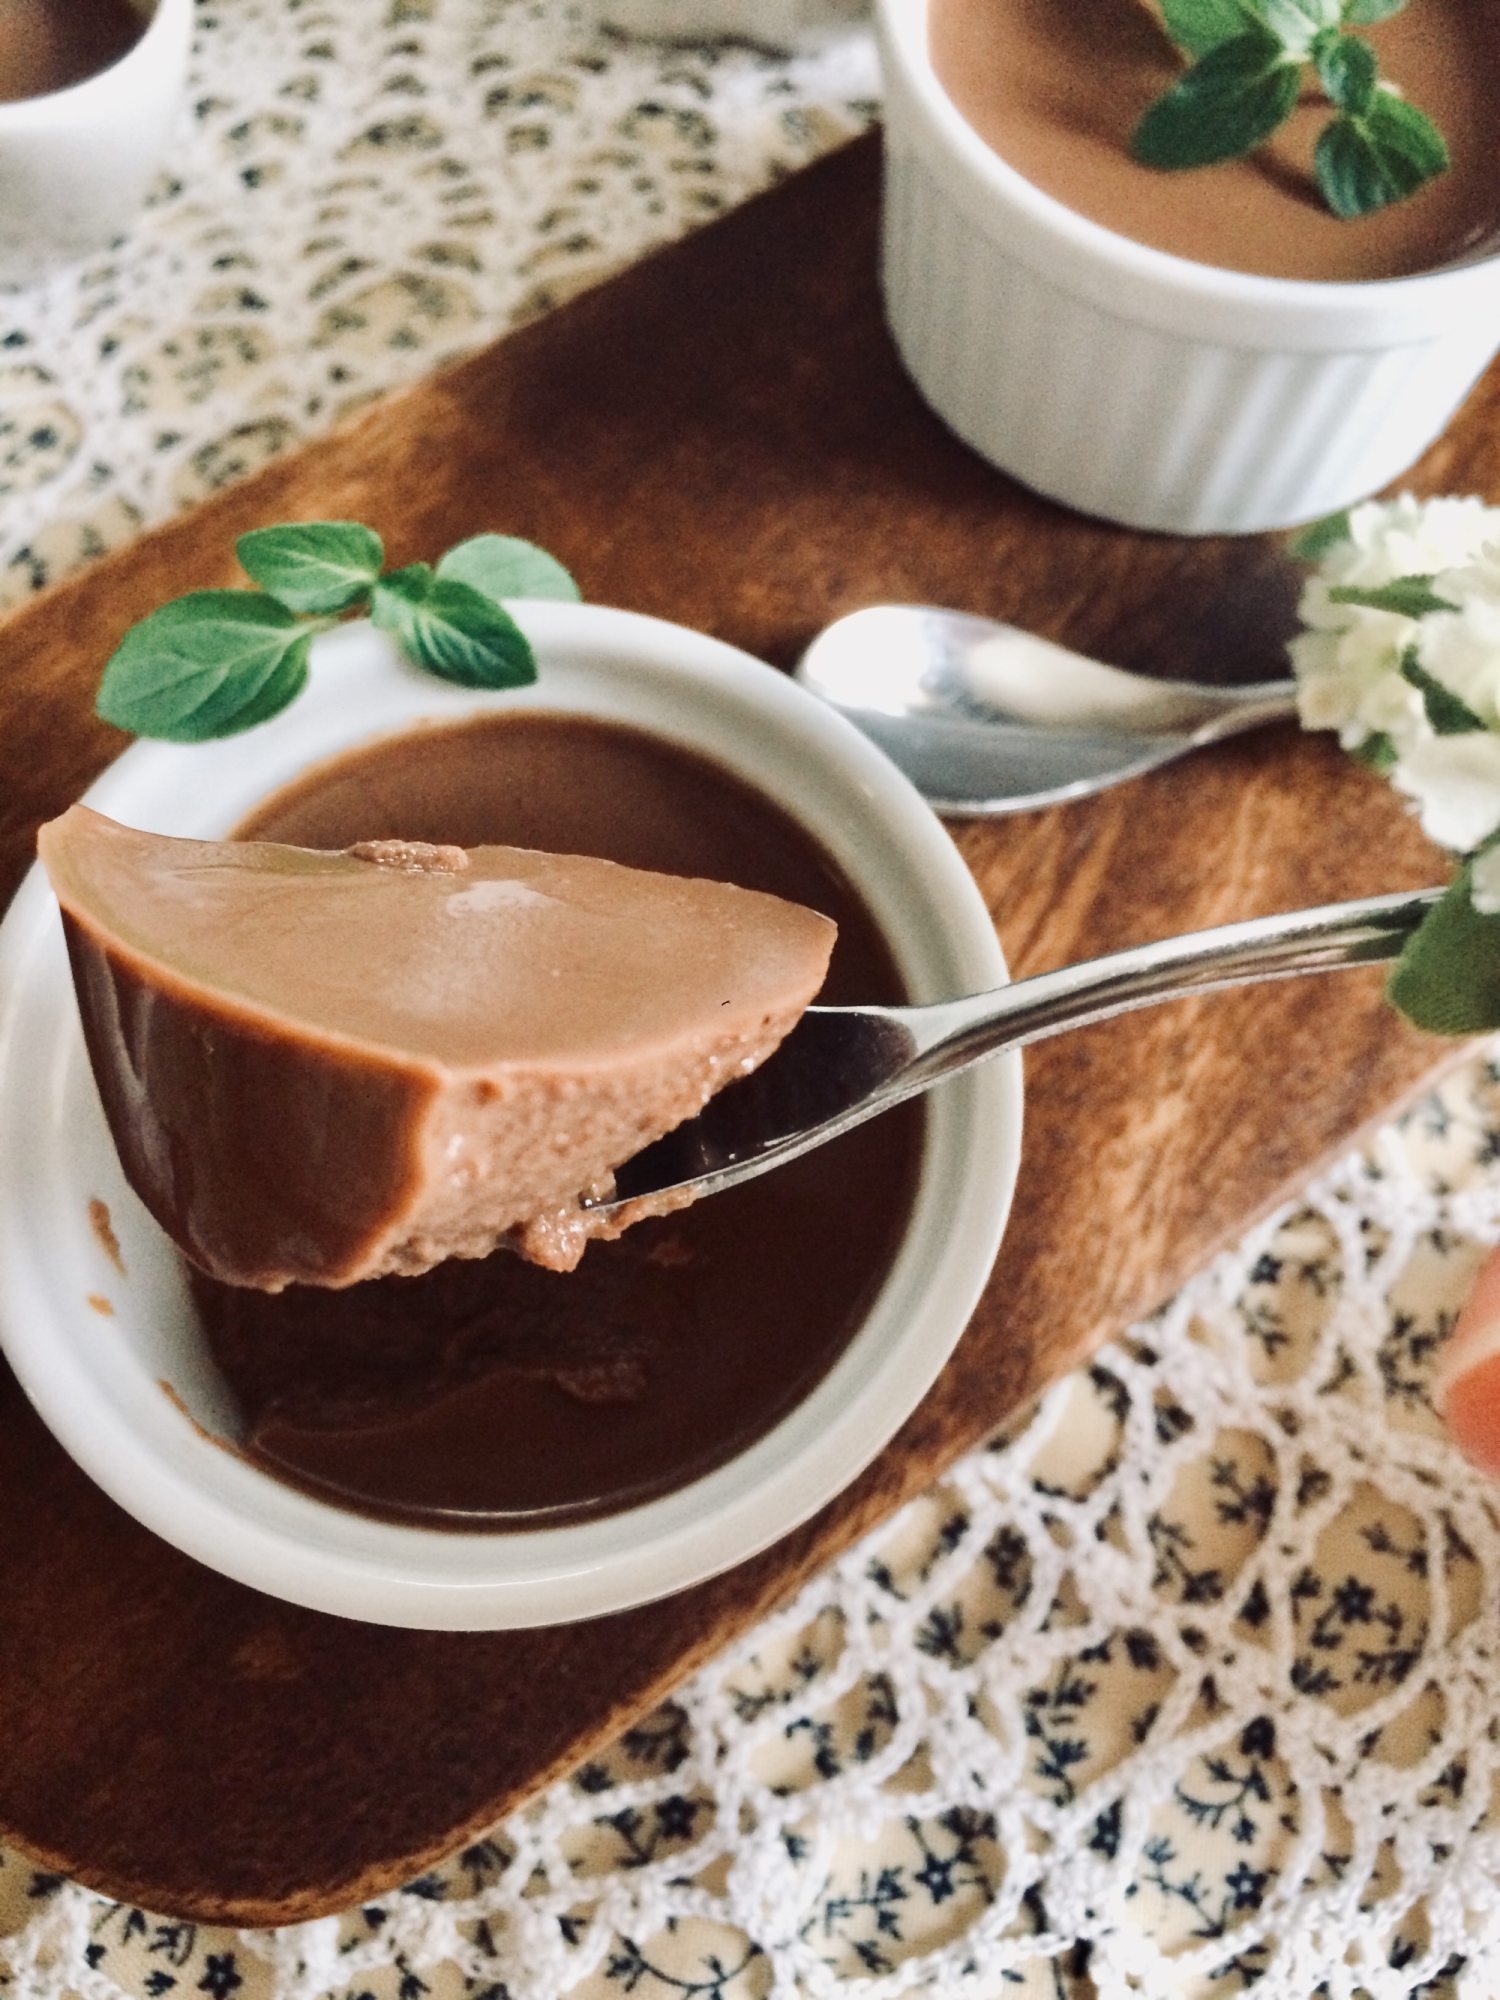 粉寒天で作る簡単♬ Cocoa Pudding